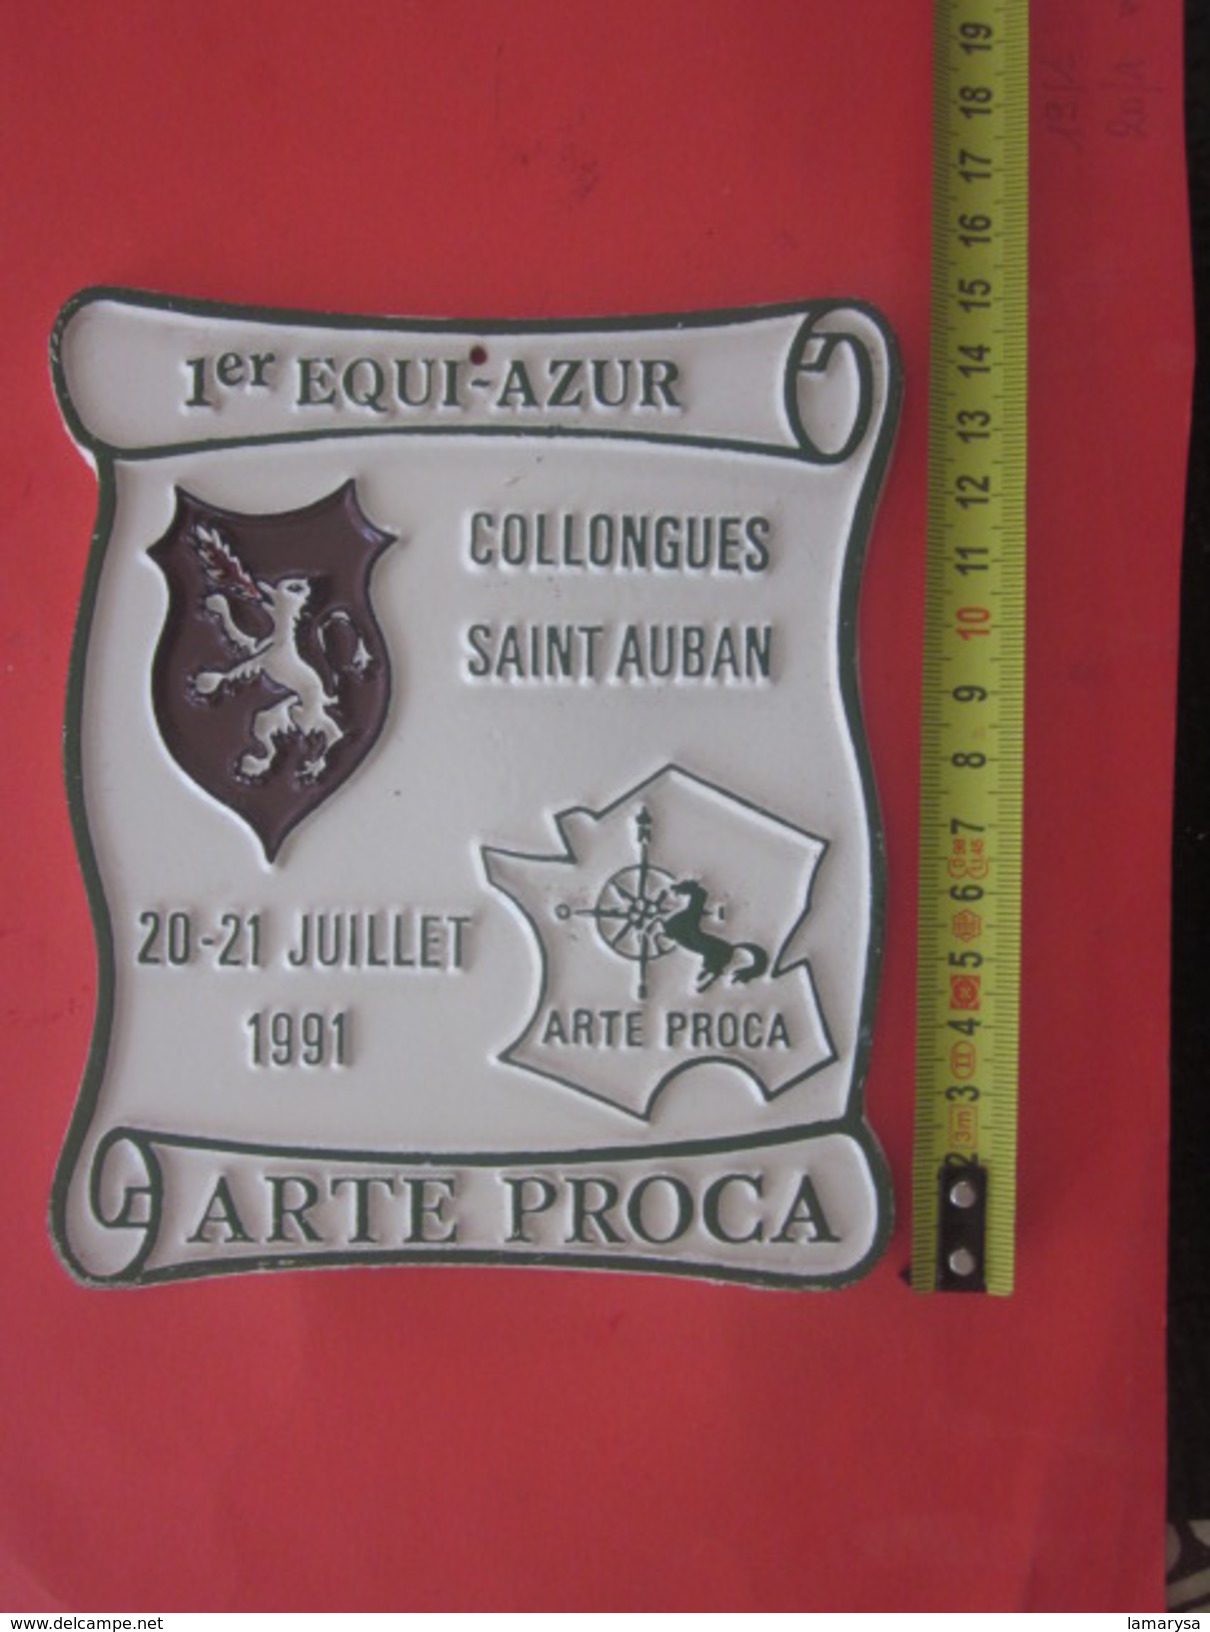 COLLONGES SAINT AUBAN 1ER EQUI-AZUR-1991 F.F.E. ARTE PROCA-Équestre Equitation Plaque Souvenir Commémorative - Reiten